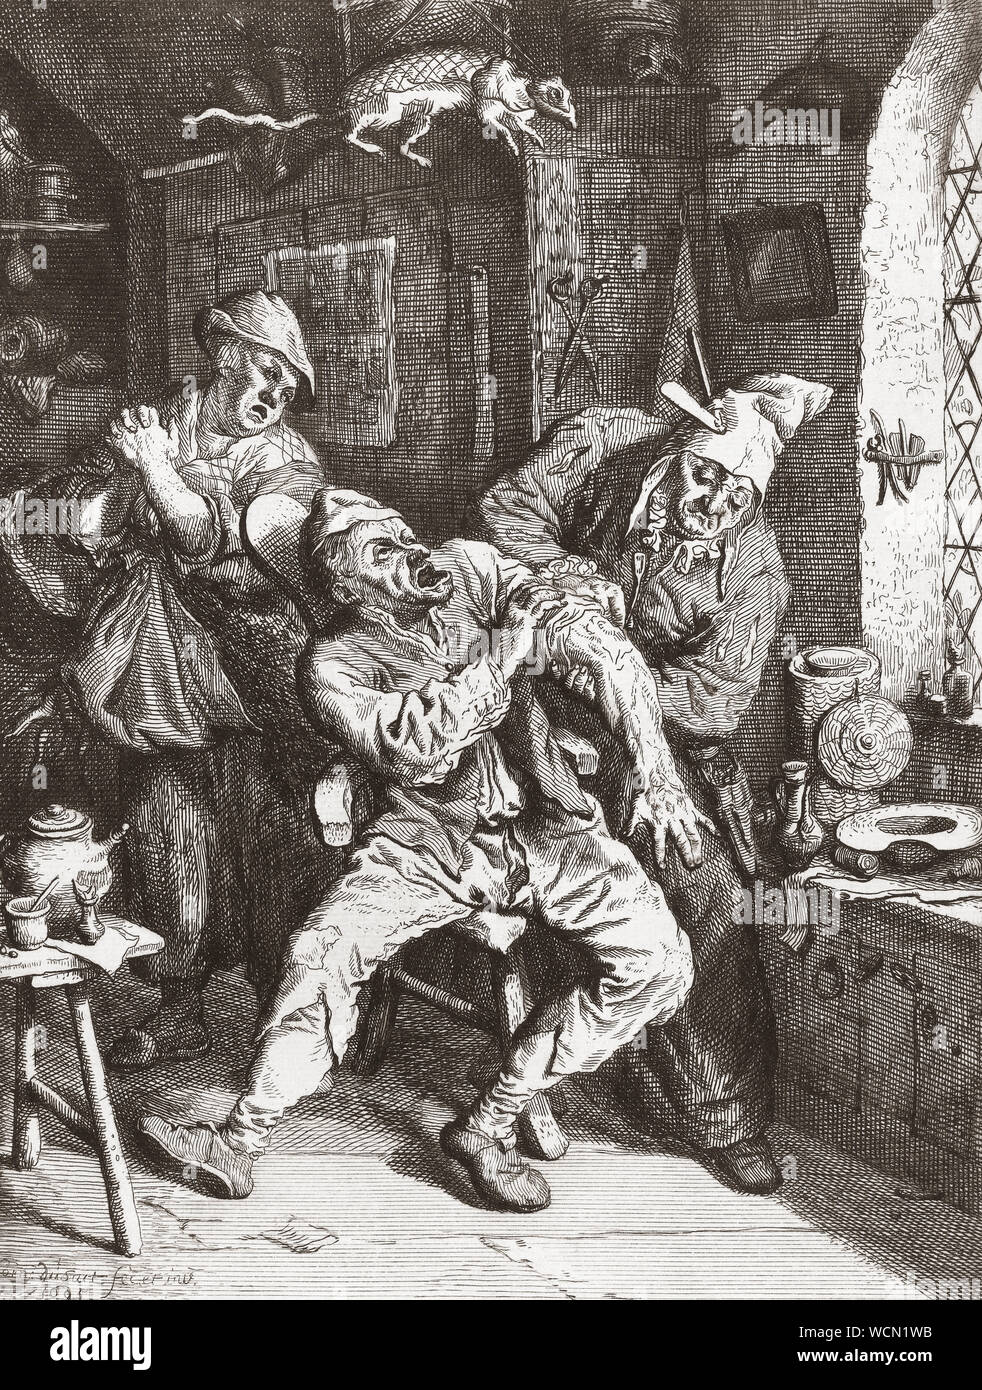 Im 17. Jahrhundert, ein Chirurg führt eine Operation am Arm eines Mannes, während eine verzweifelte Frau Uhren. Nach einem 17. Jahrhundert arbeiten. Stockfoto